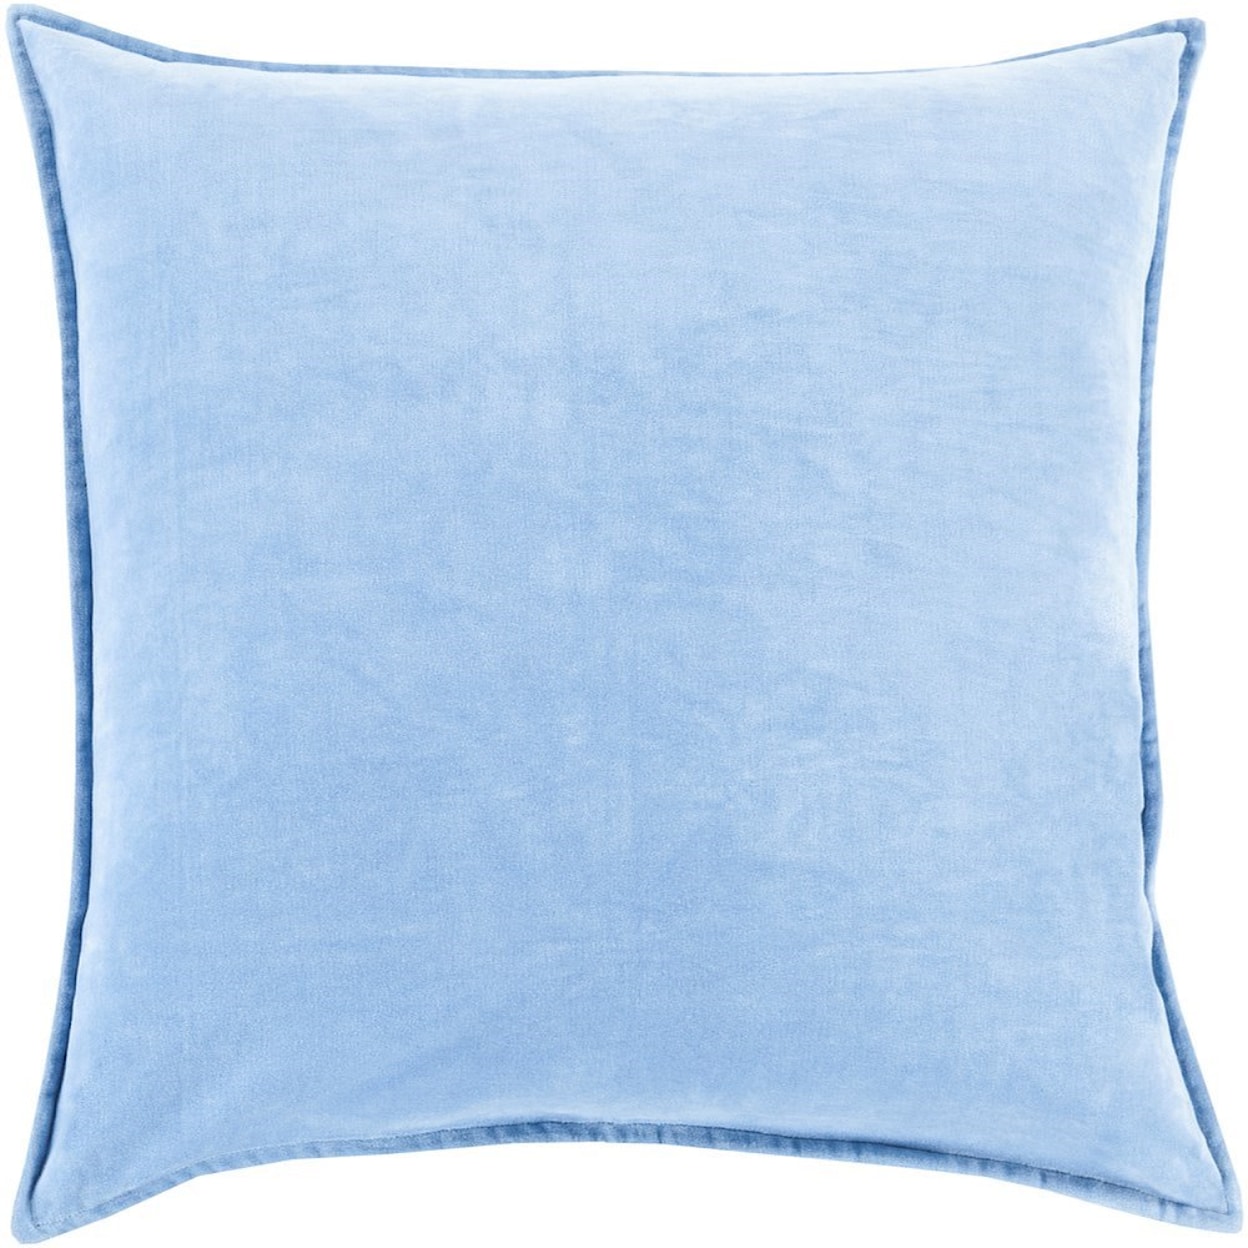 Surya Rugs Cotton Velvet 18 x 18 x 4 Down Throw Pillow